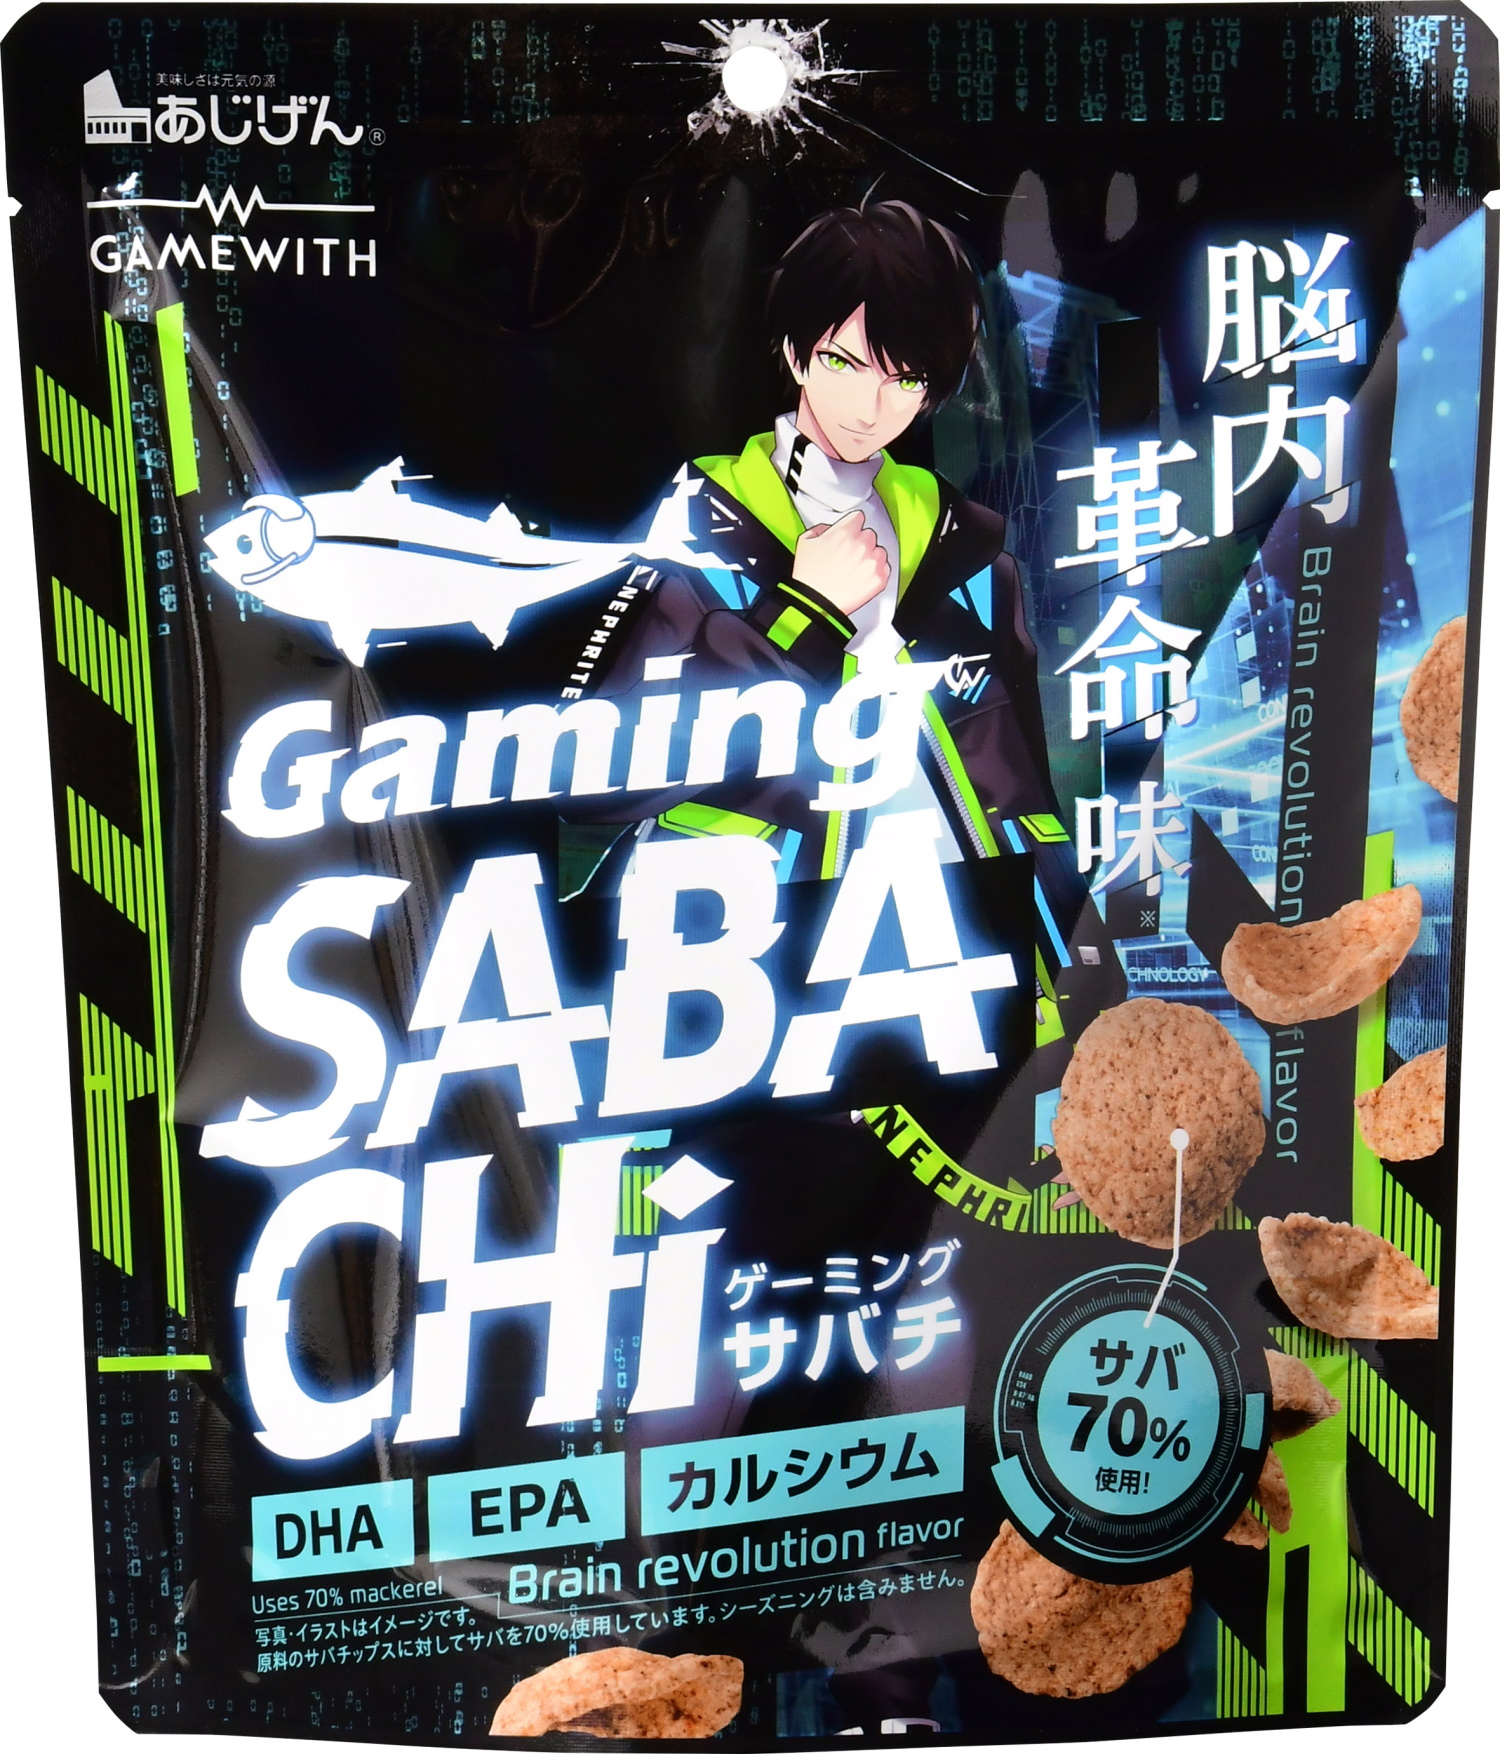 日本初”のゲーム専用スナックが誕生！ 「Gaming SABACHi 脳内革命味」9